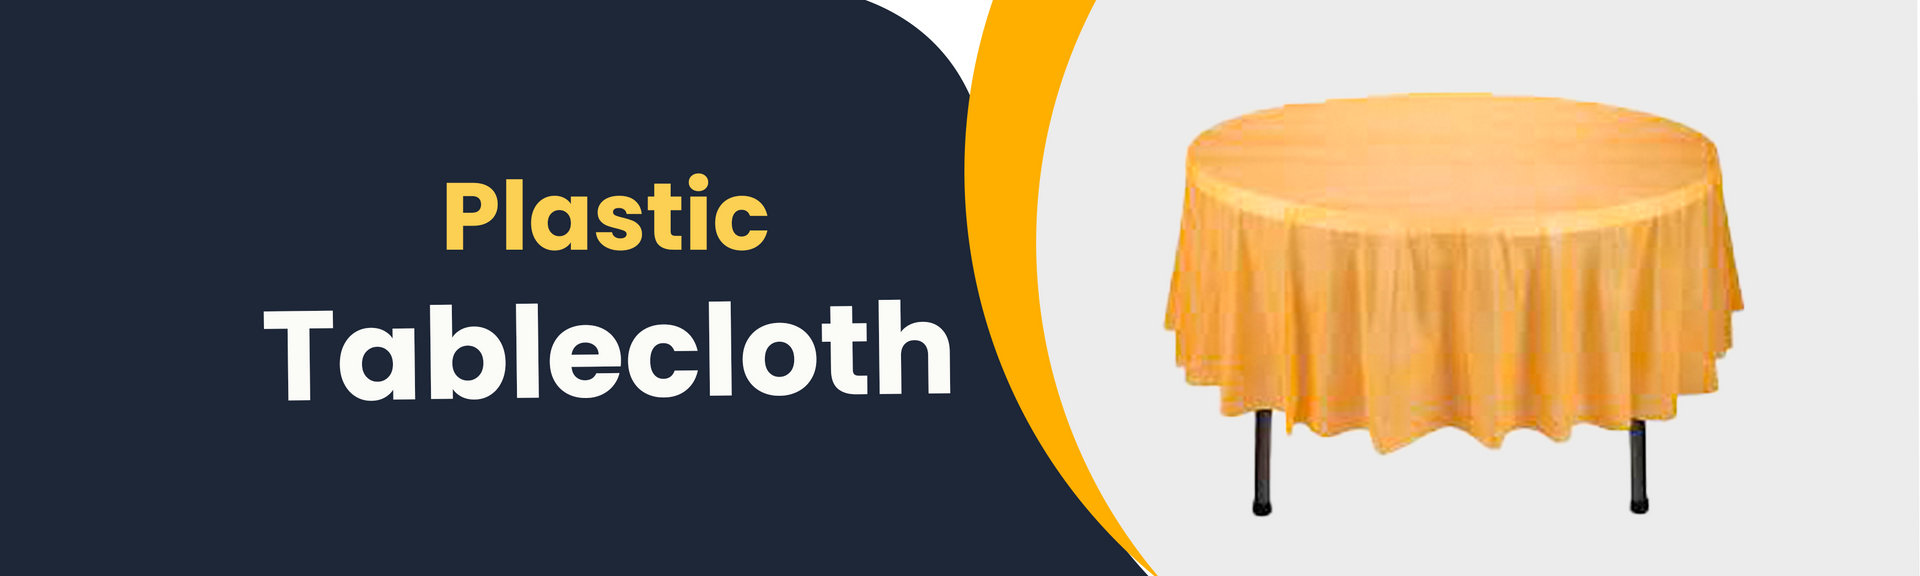 Tablecloth Plastic